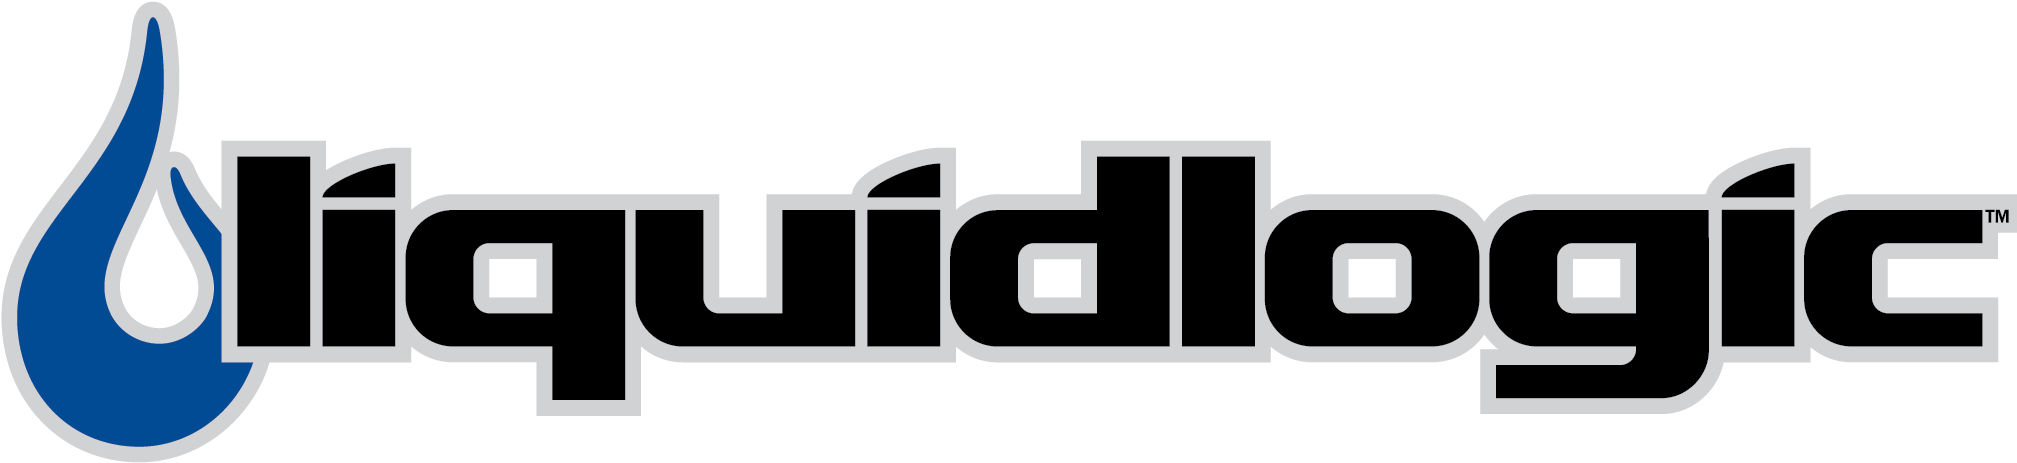 Liquid Logic Logo Clipart (2544x619), Png Download